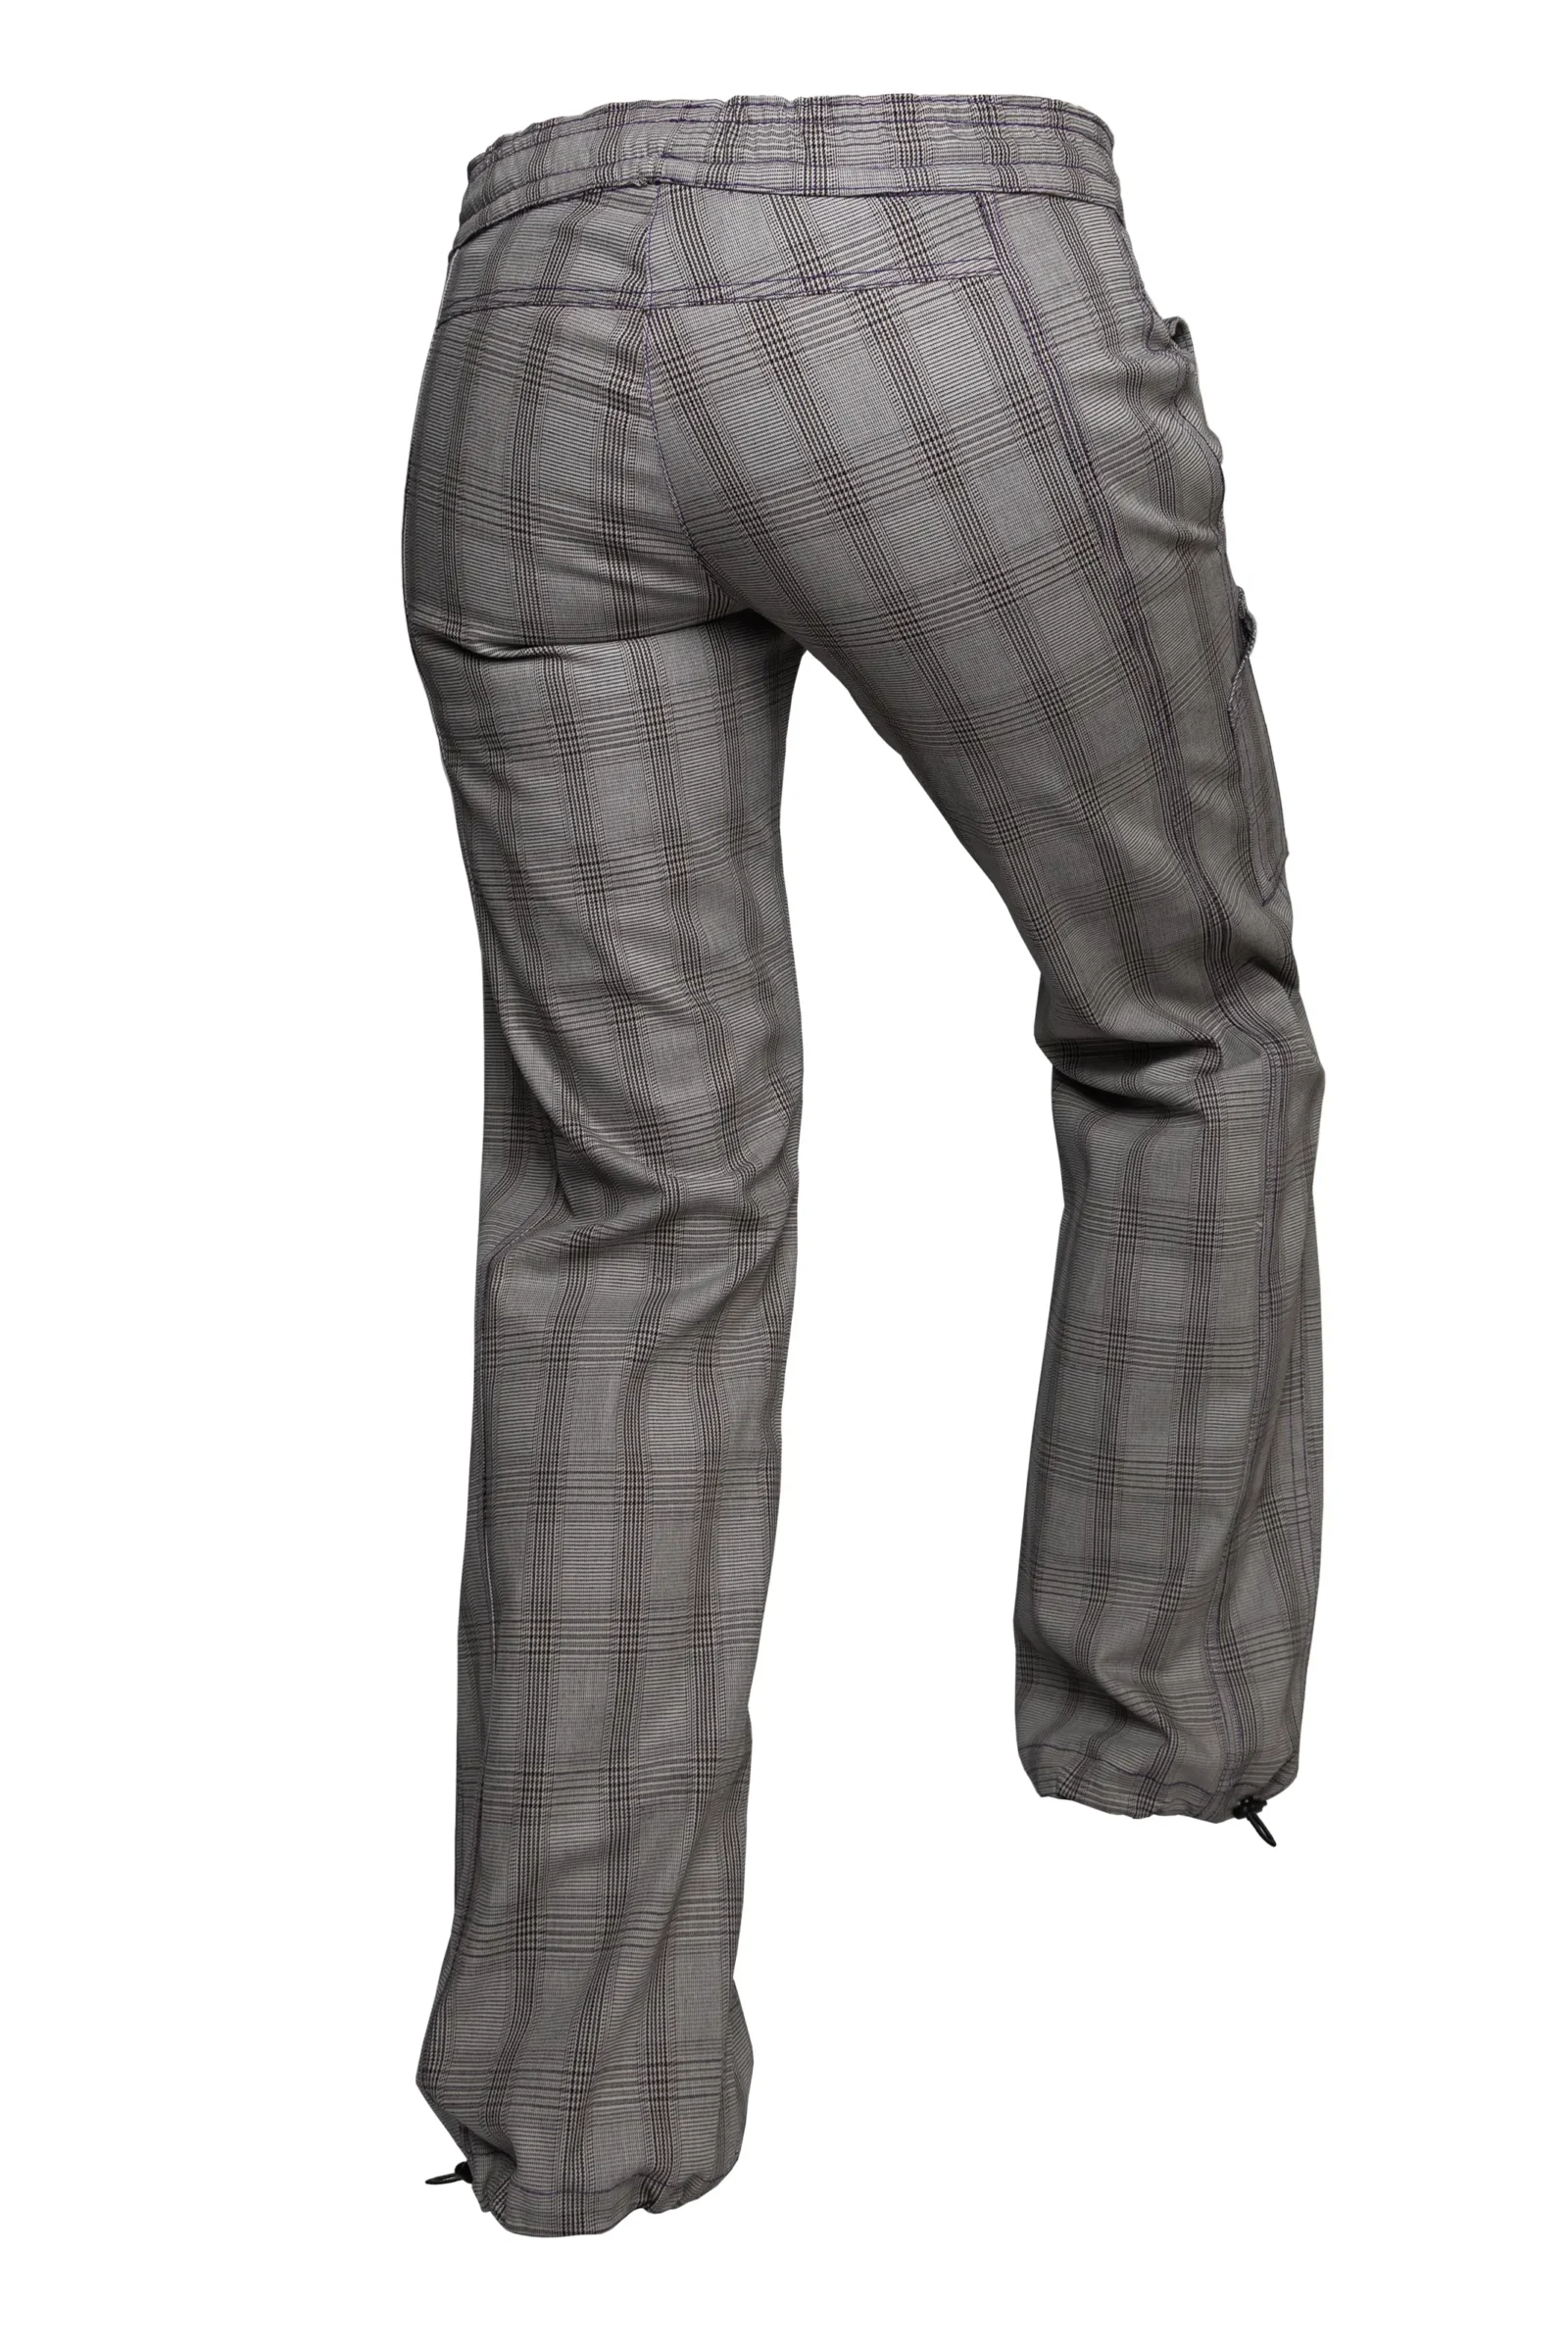 Pantalon à carreaux femme - beige / gris / noir Q3 - VIOLET Monvic